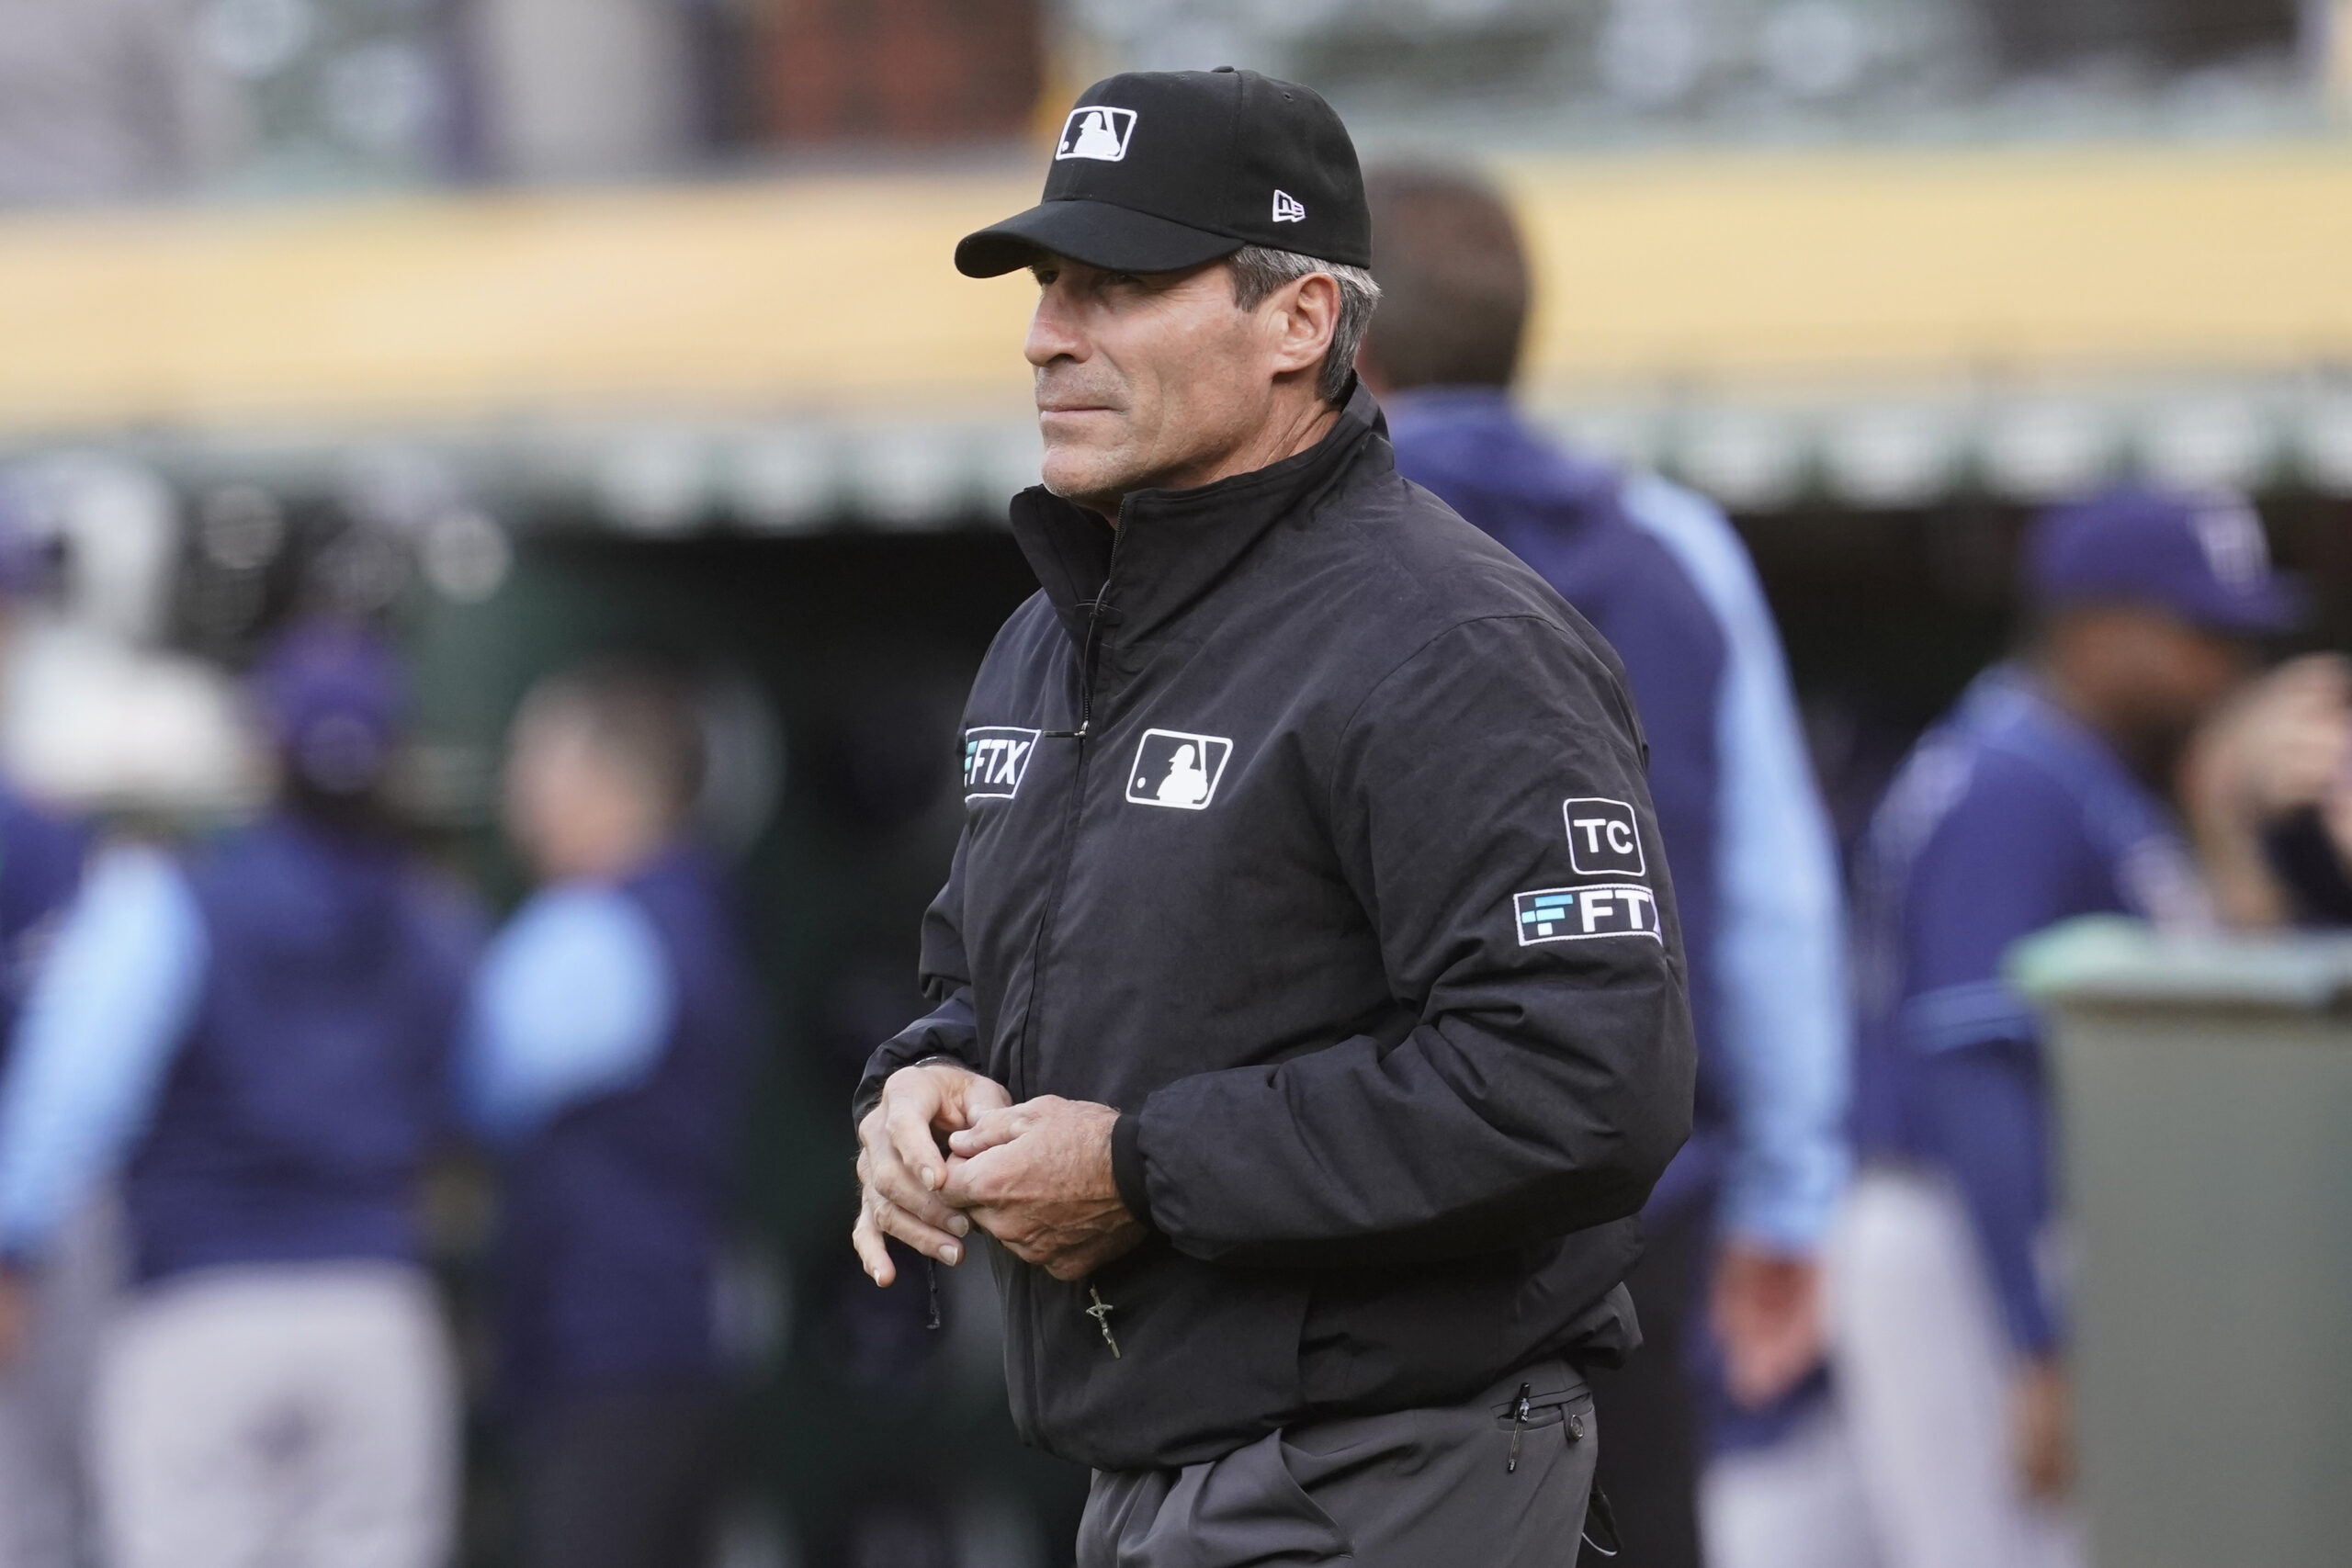 MLB umpire Angel Hernandez files lawsuit against league alleging